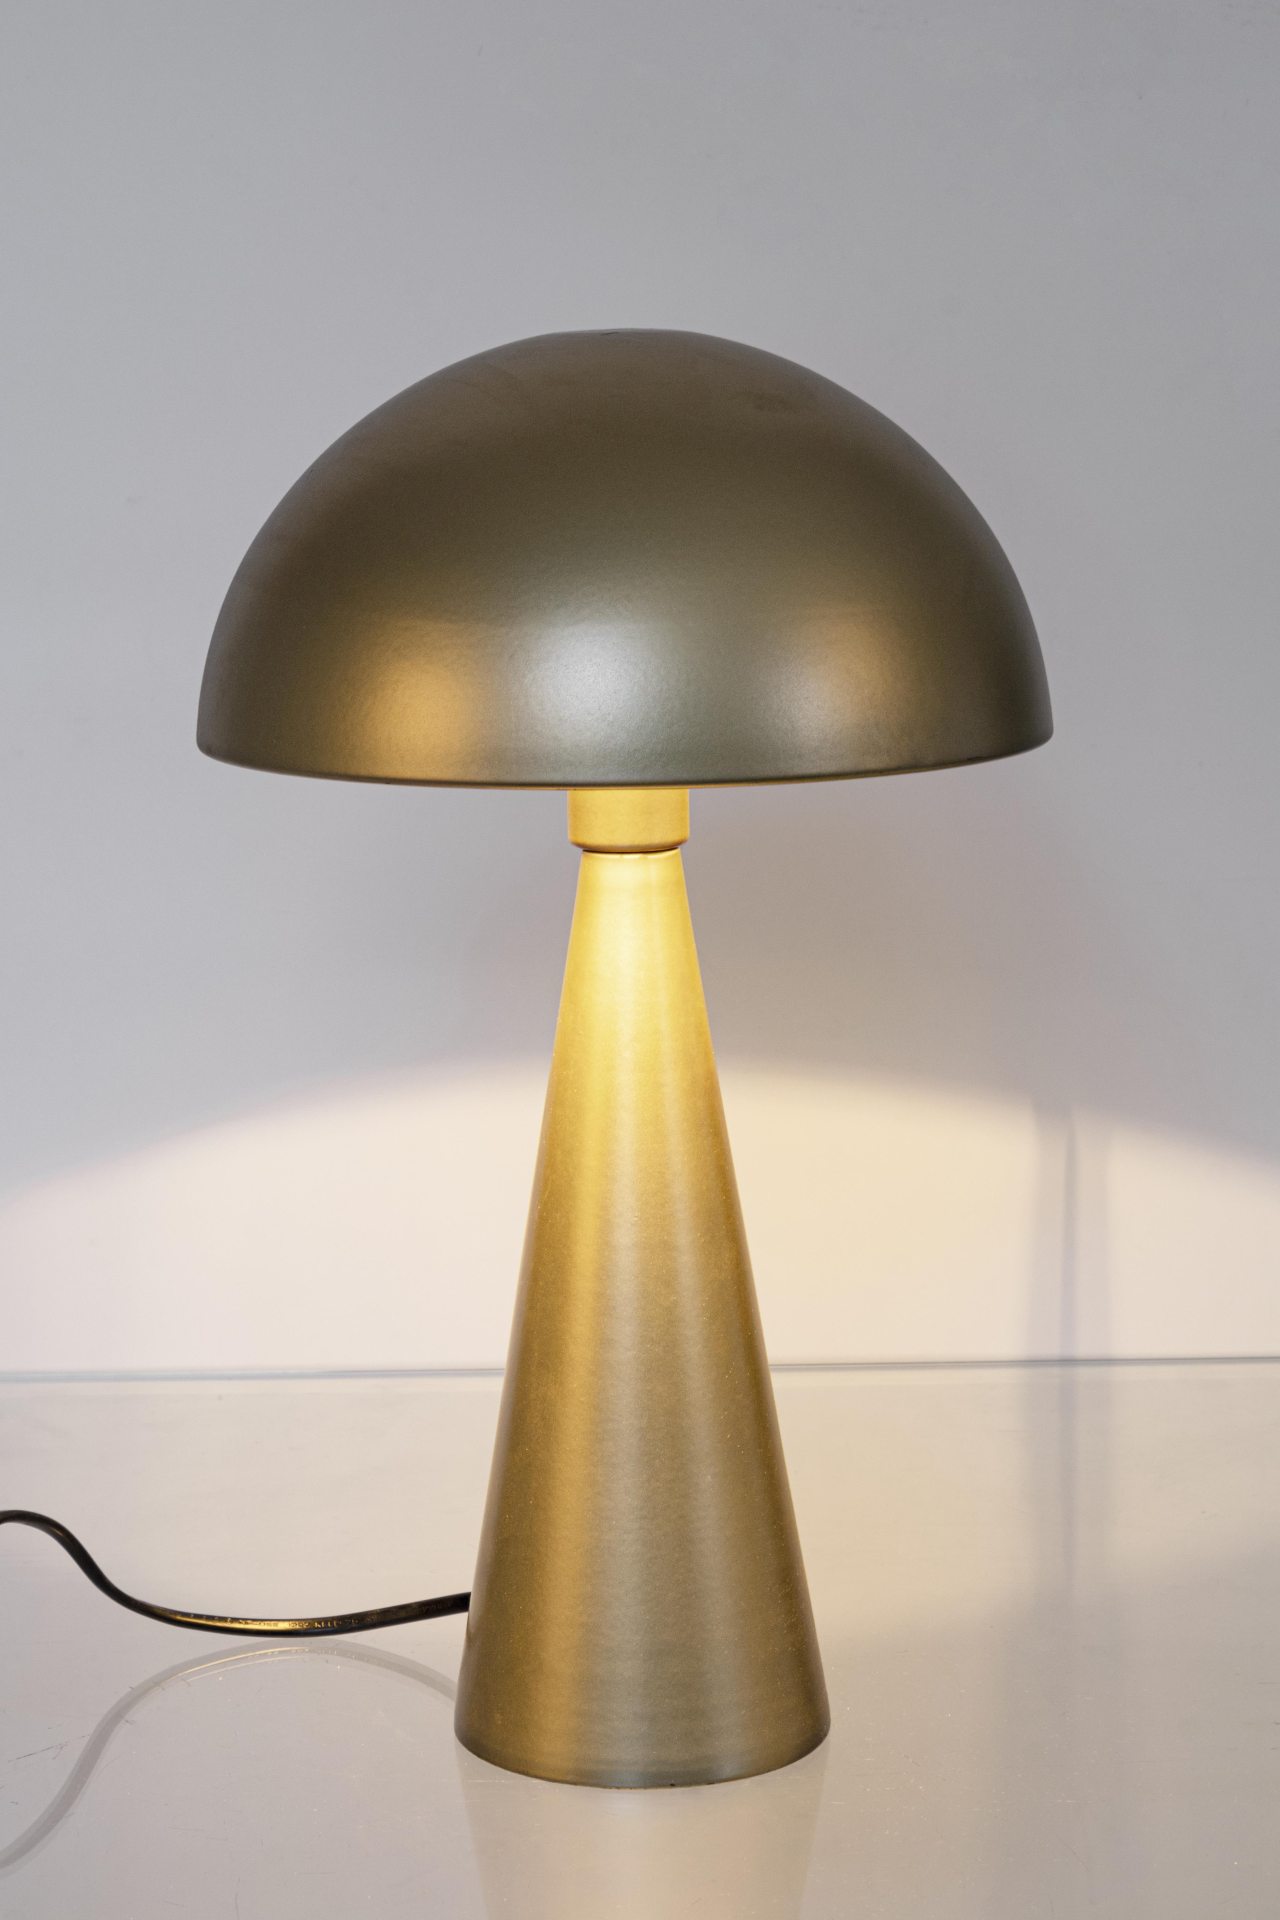 Die Tischleuchte Modern überzeugt mit ihrem modernen Design. Gefertigt wurde sie aus Metall, welches einen goldenen Farbton besitzt. Der Lampenschirm ist auch aus Metall. Die Lampe besitzt eine Höhe von 36,5 cm.